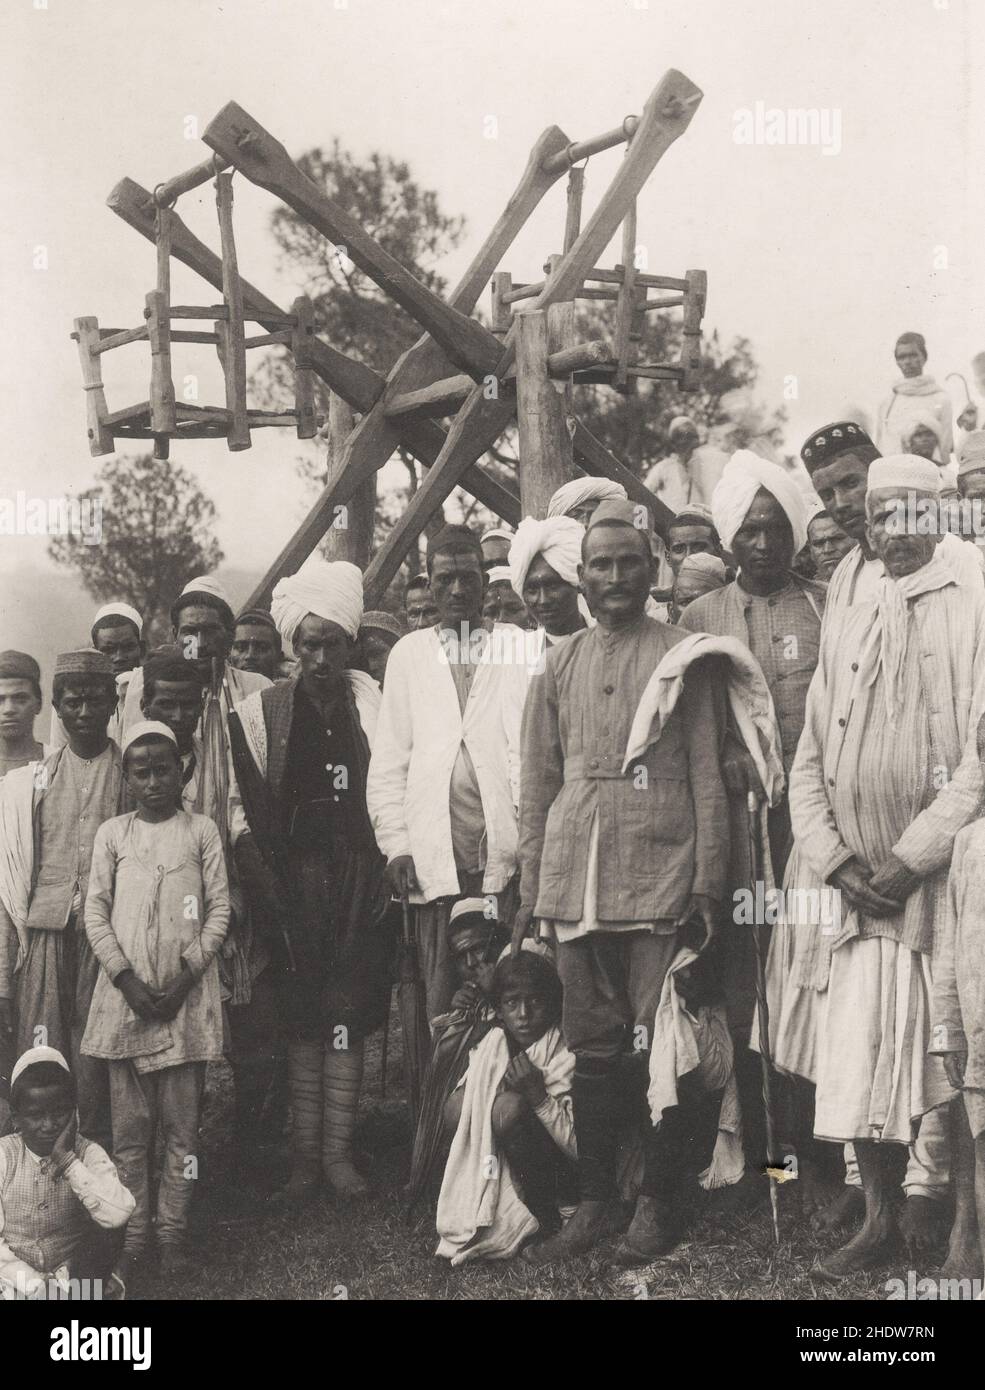 Fotografia d'epoca del 19th secolo: Giro e gruppo del fairground, fiera ai piedi delle colline di Hamalaya, India. Foto Stock